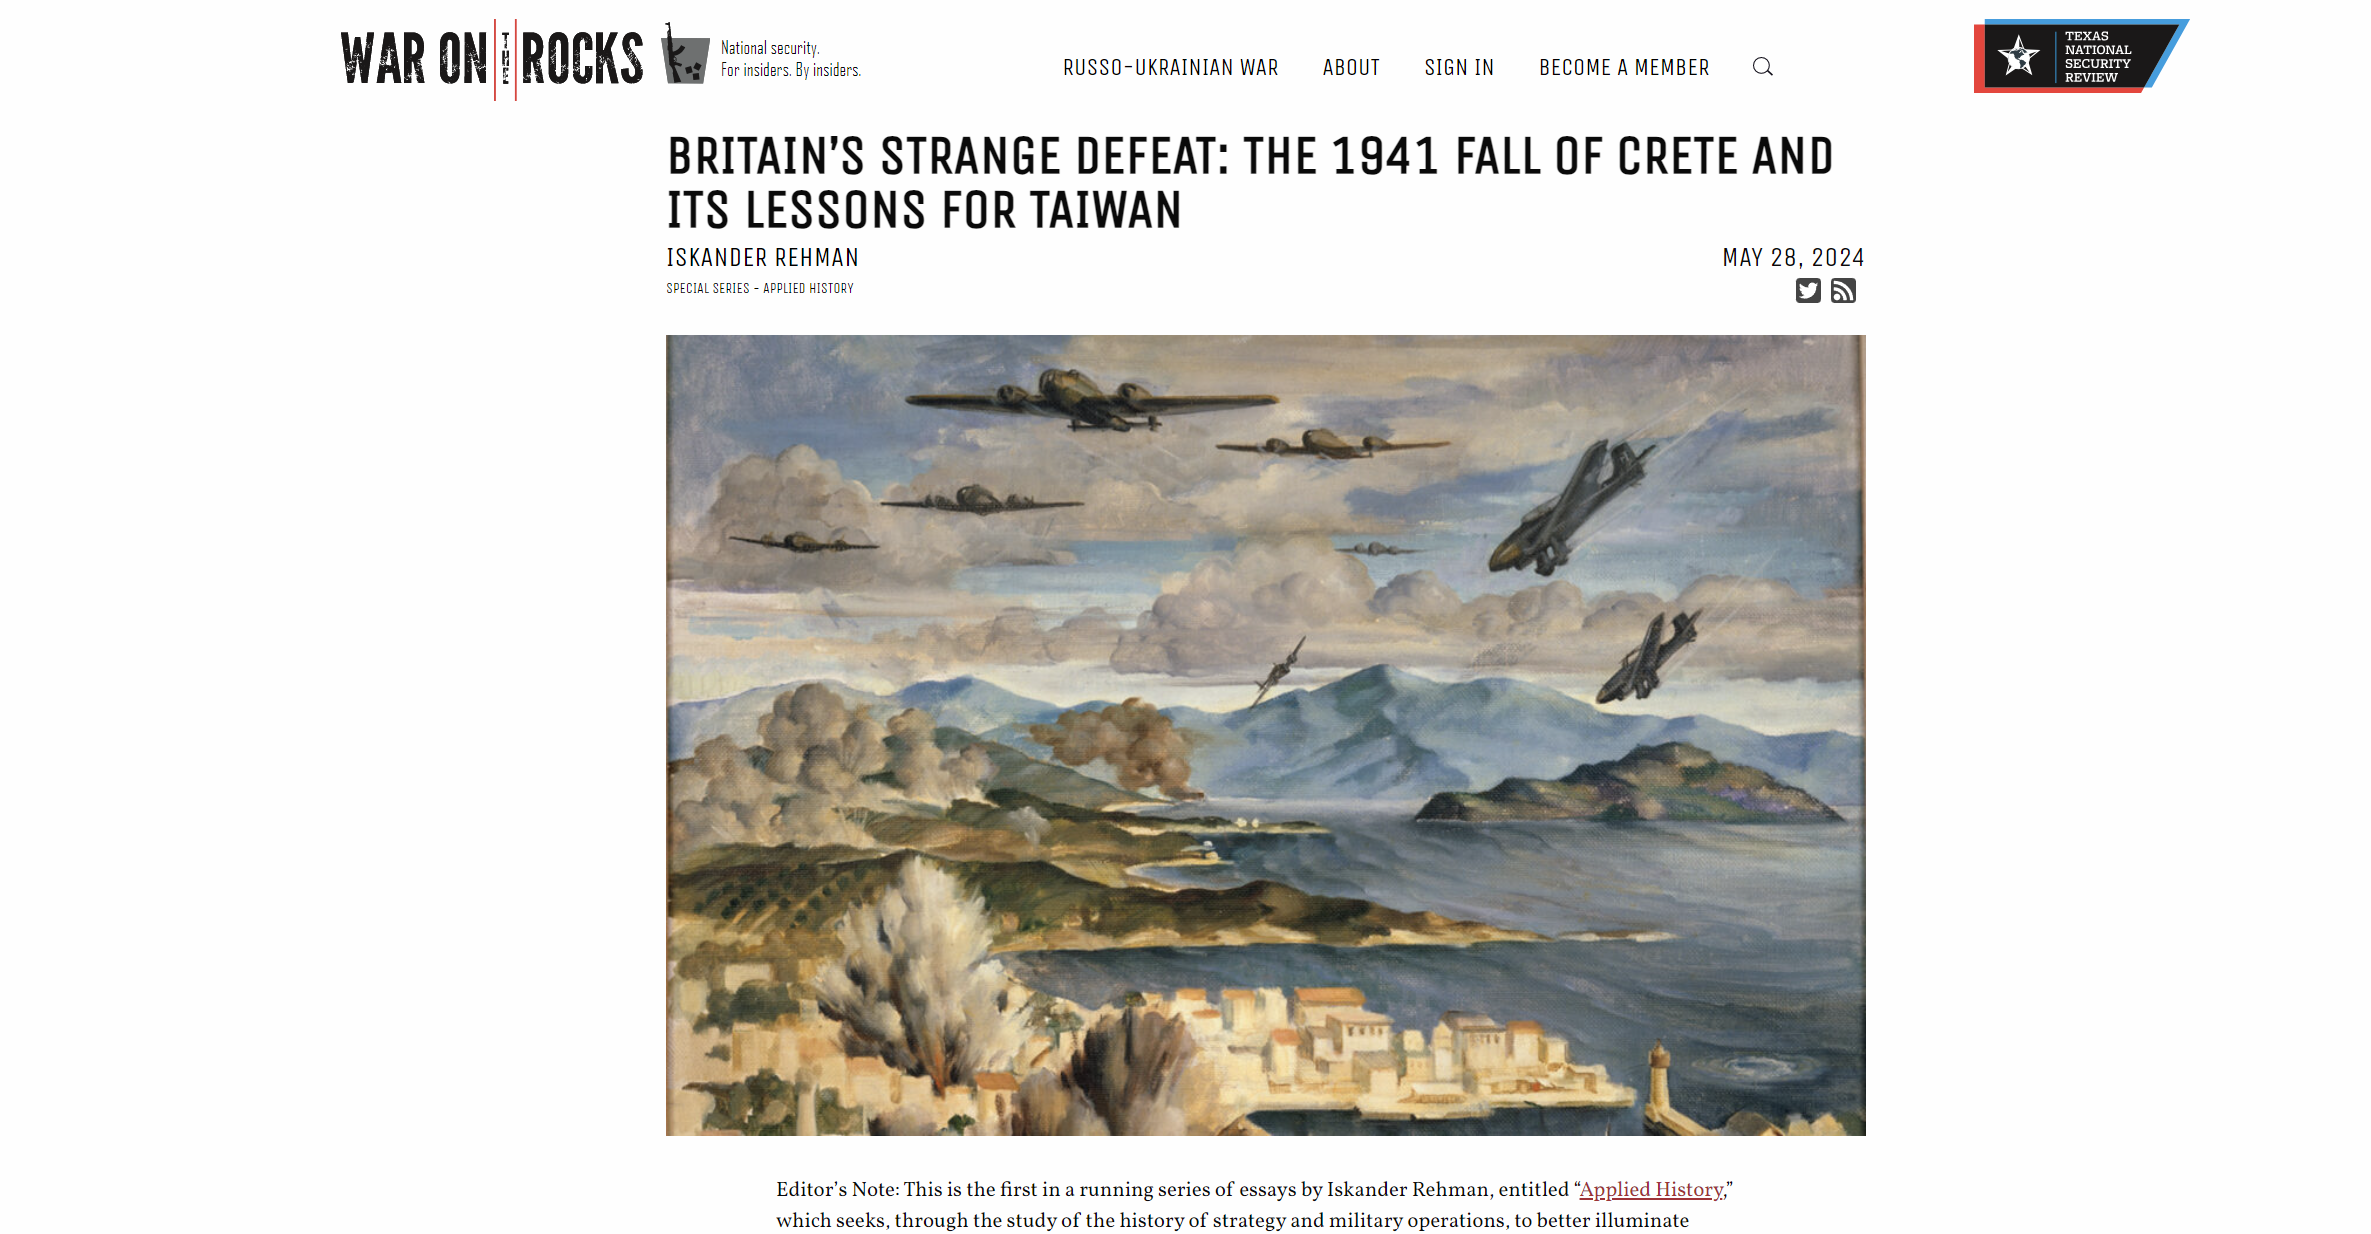 War On the Rocks: Οι Ηνωμένες Πολιτείες κινδυνεύουν να χάσουν την Ταϊβάν από την Κίνα, όπως οι Βρετανοί τη Μάχη της Κρήτης το 1941